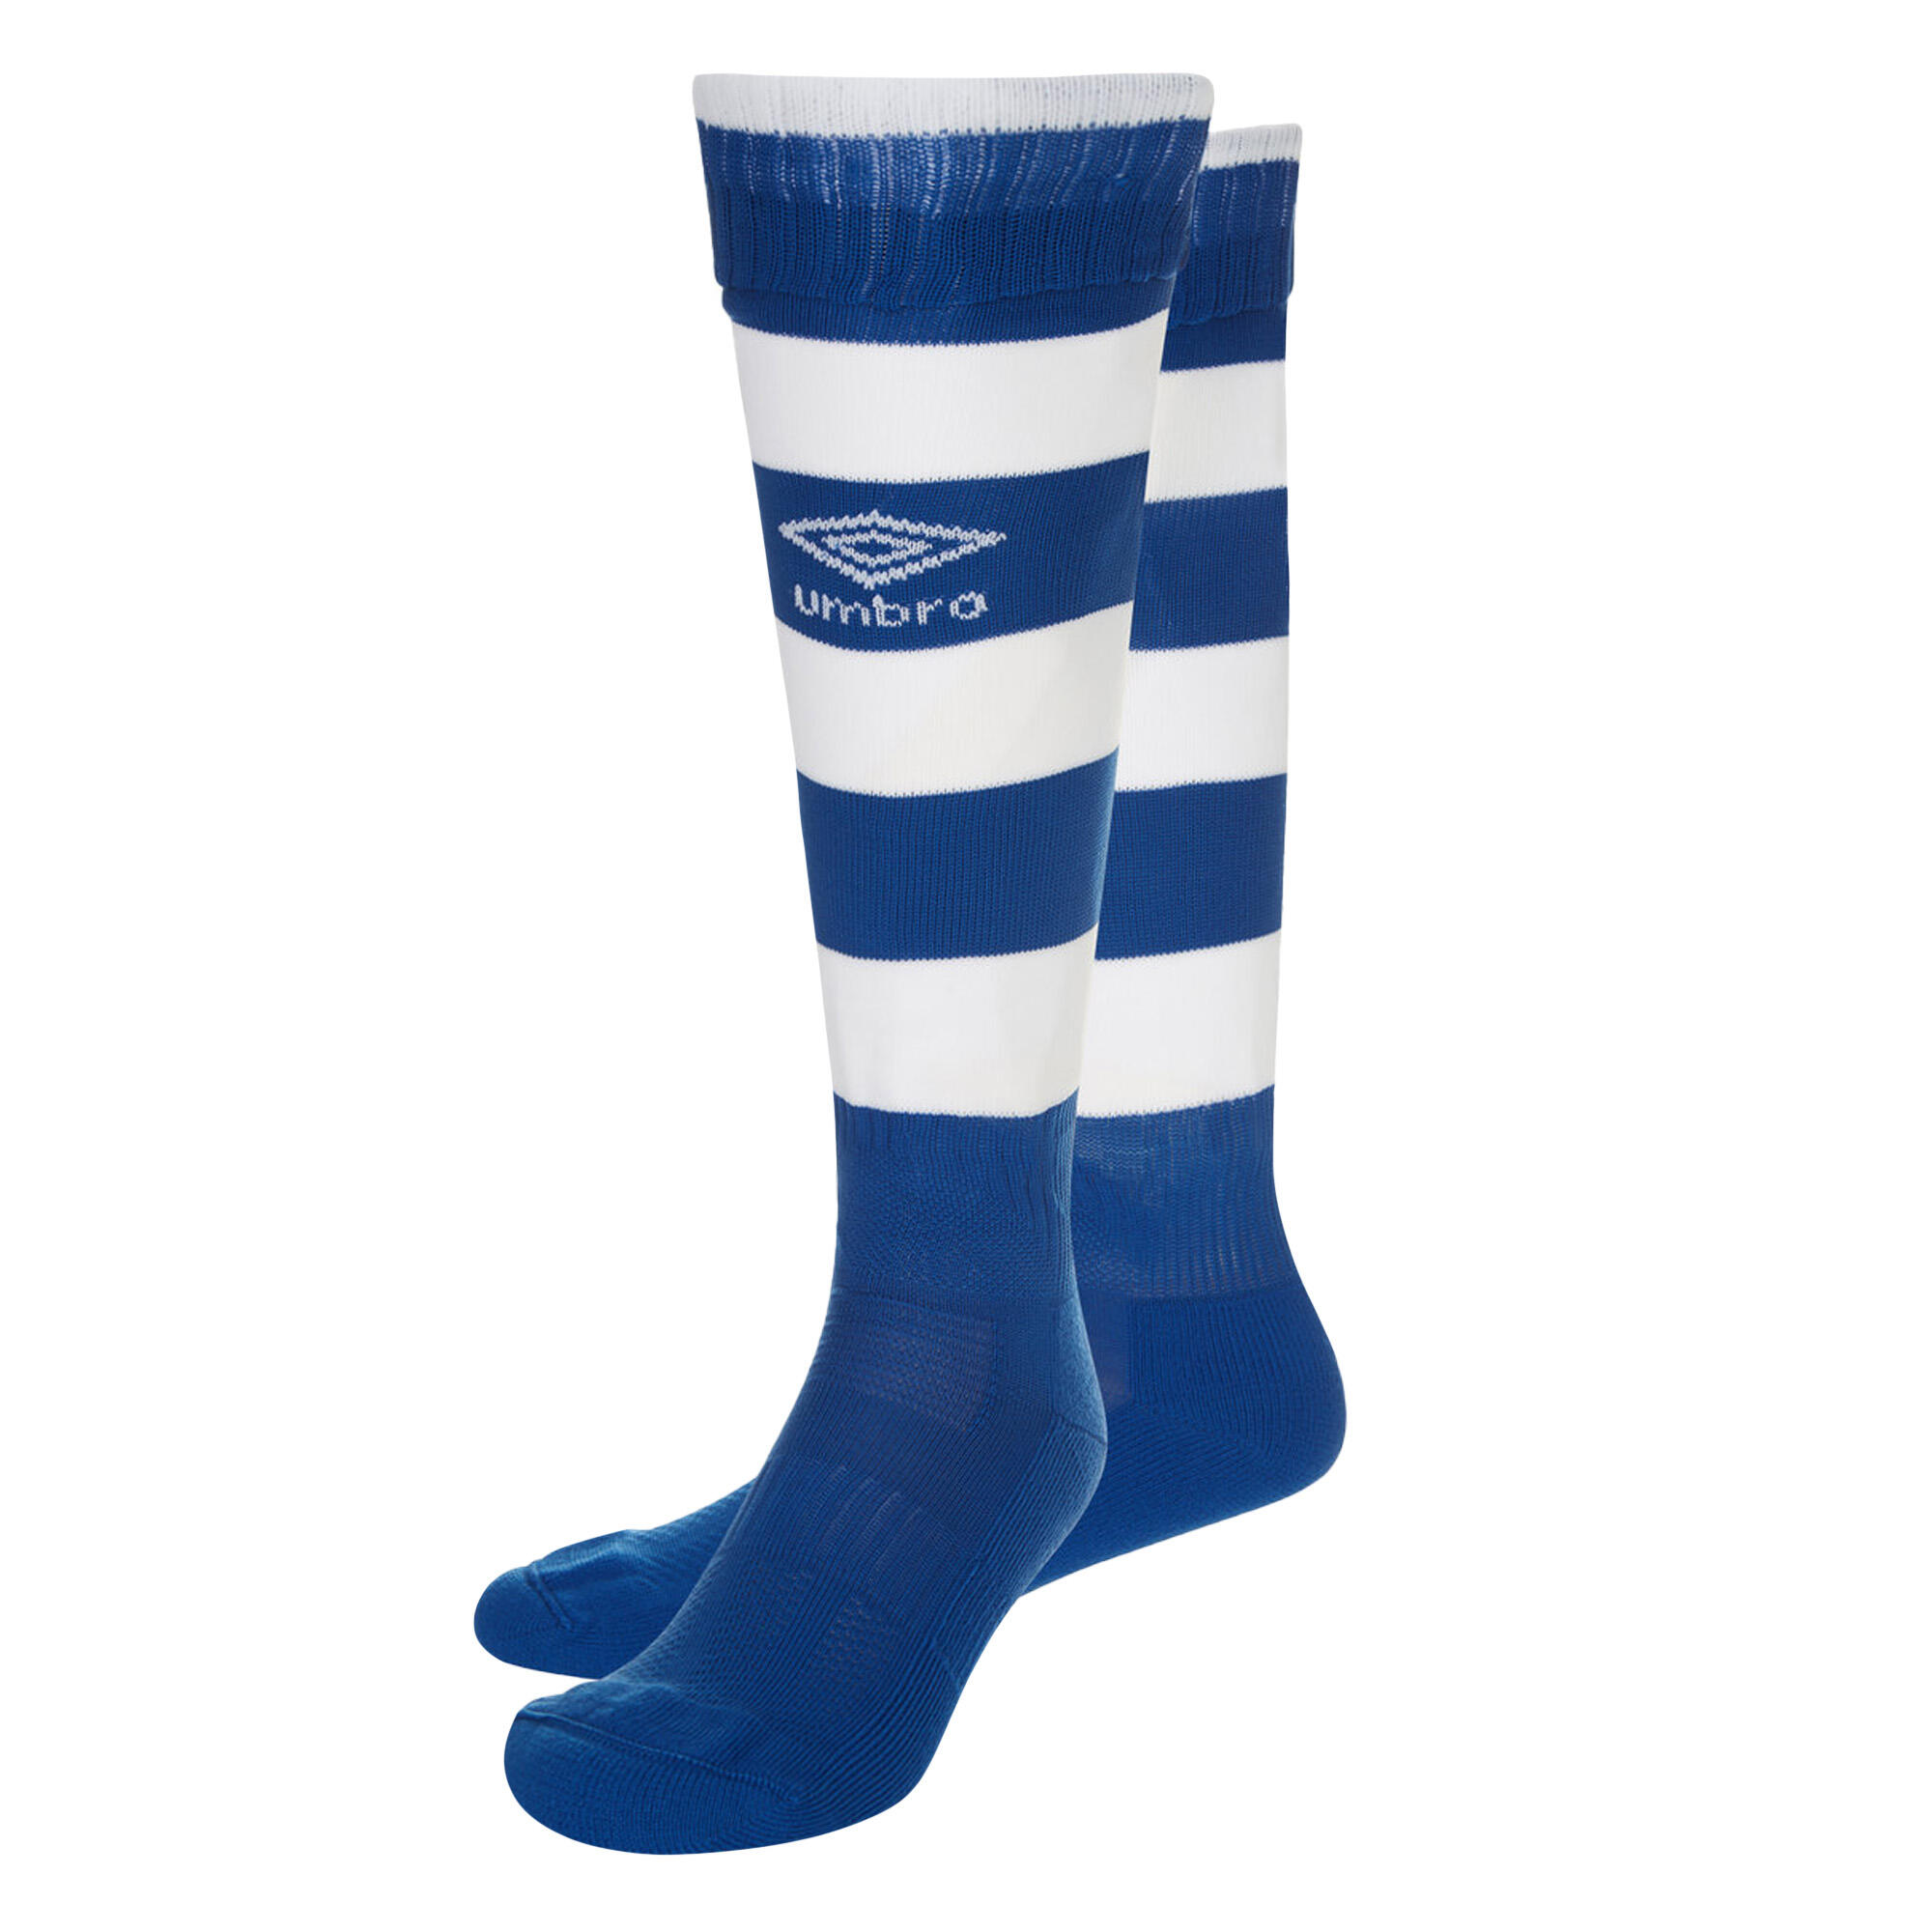 UMBRO Mens Hoop Stripe Socks (Royal Blue/White)